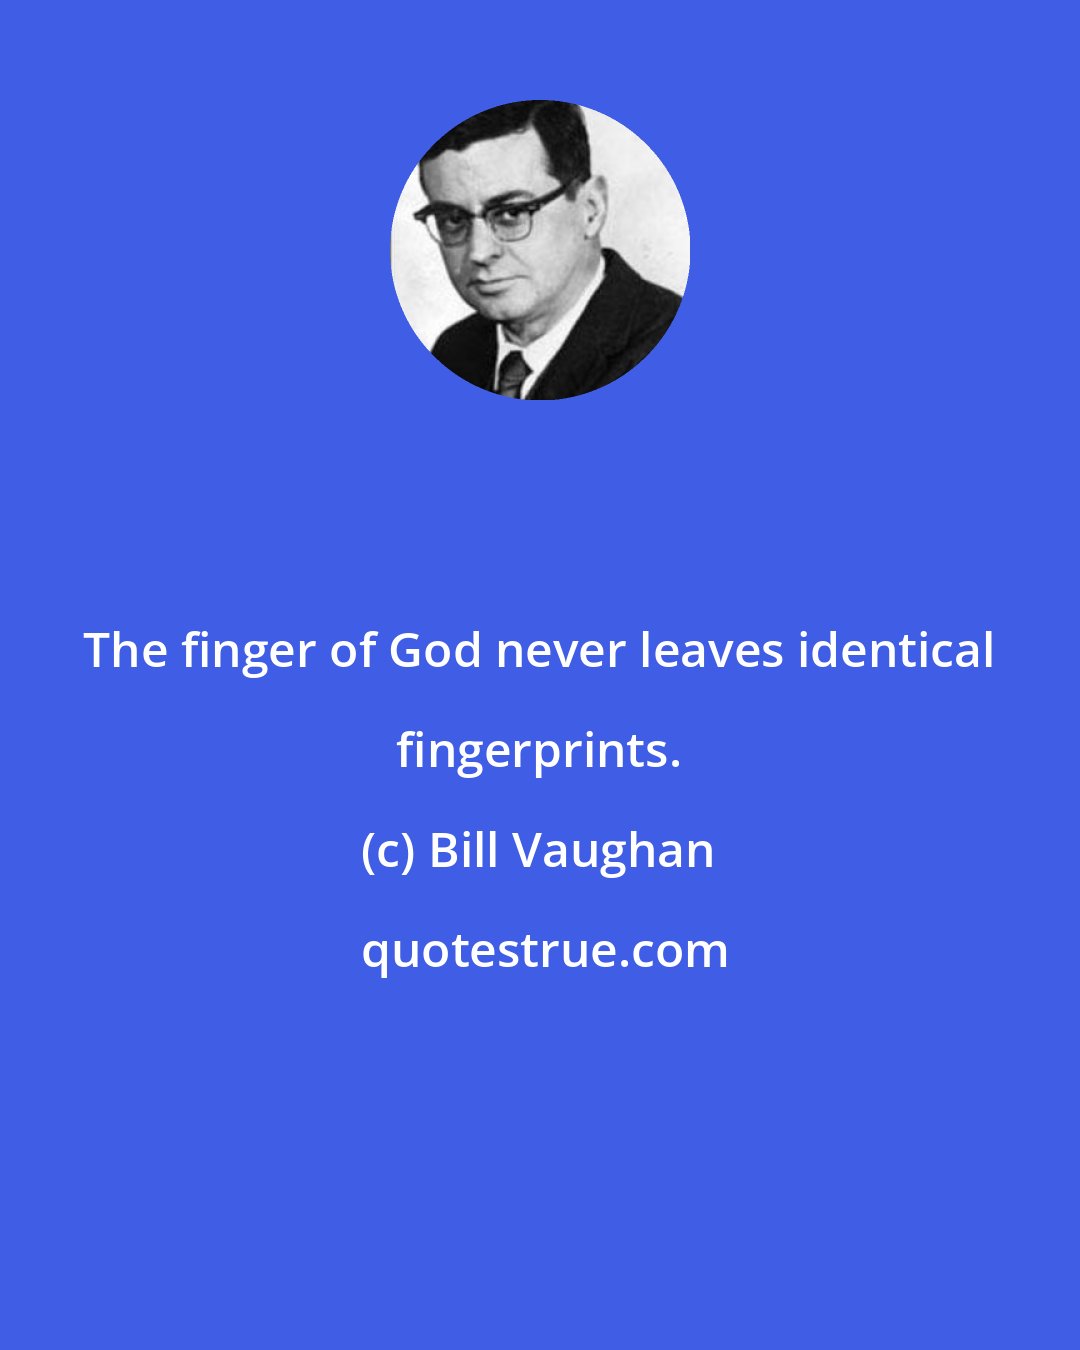 Bill Vaughan: The finger of God never leaves identical fingerprints.